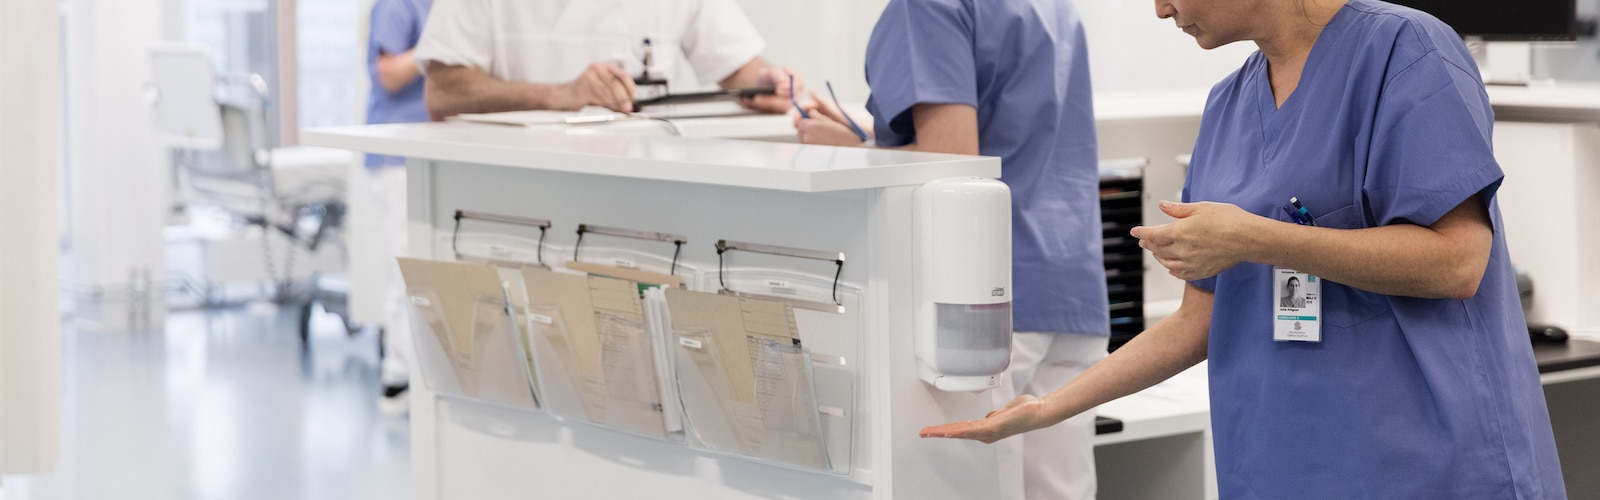 Μια νοσηλεύτρια απολυμαίνει τα χέρια της σε εντοιχιζόμενη δοσομετρική συσκευή